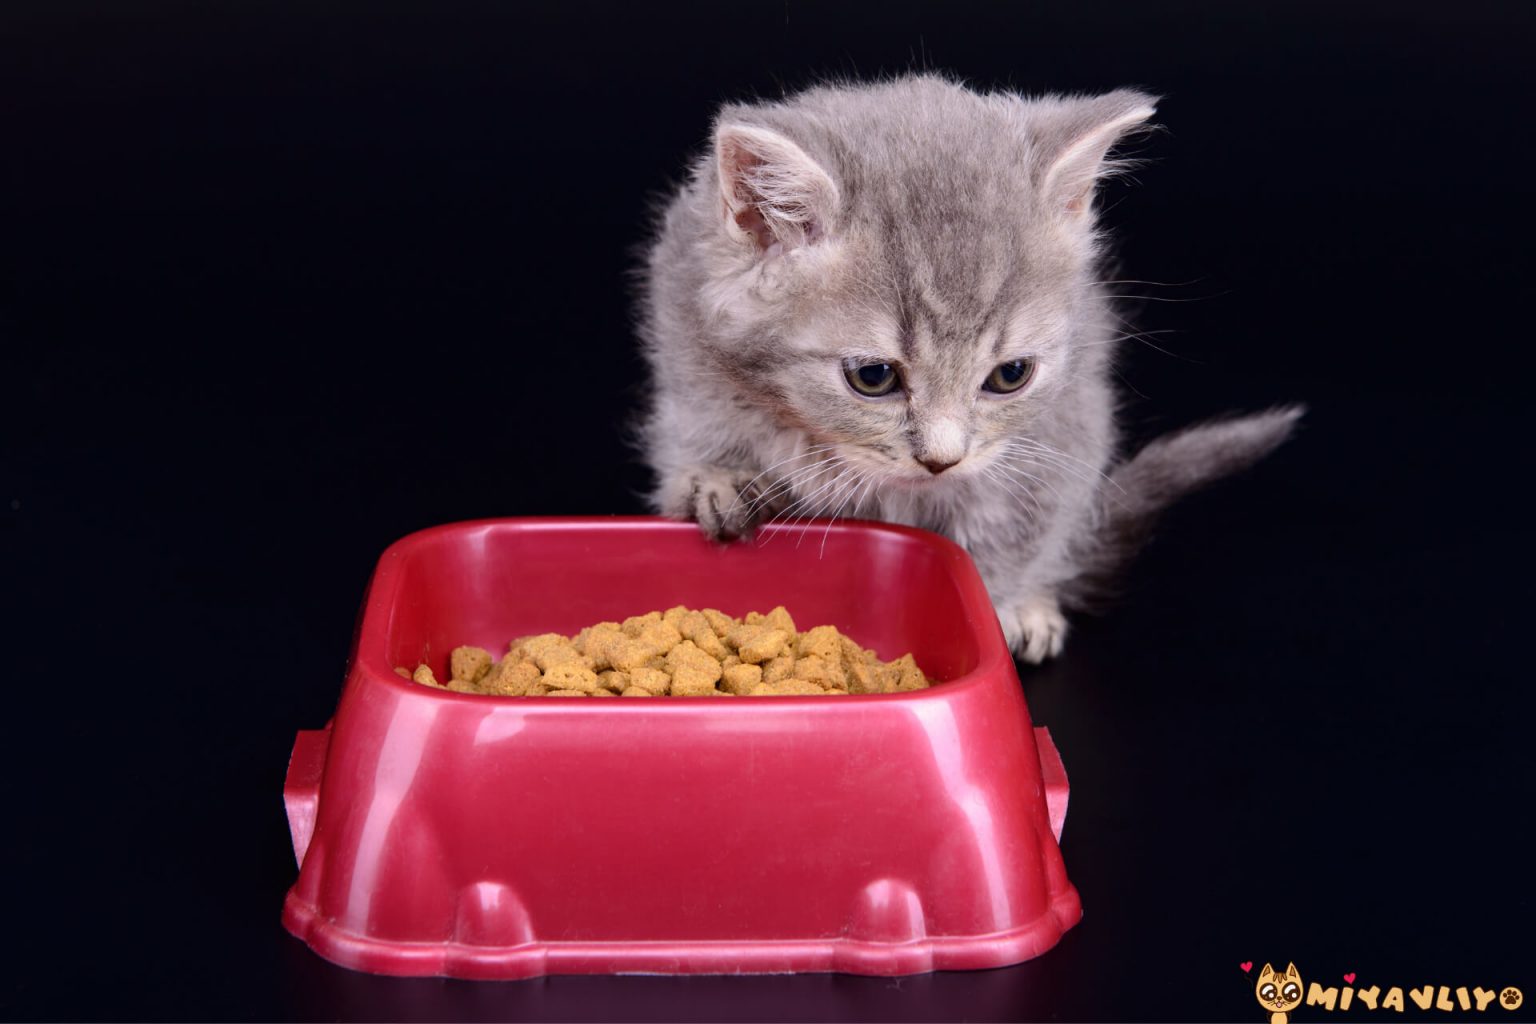 yeni doğmuş yavru kedi nasıl beslenir